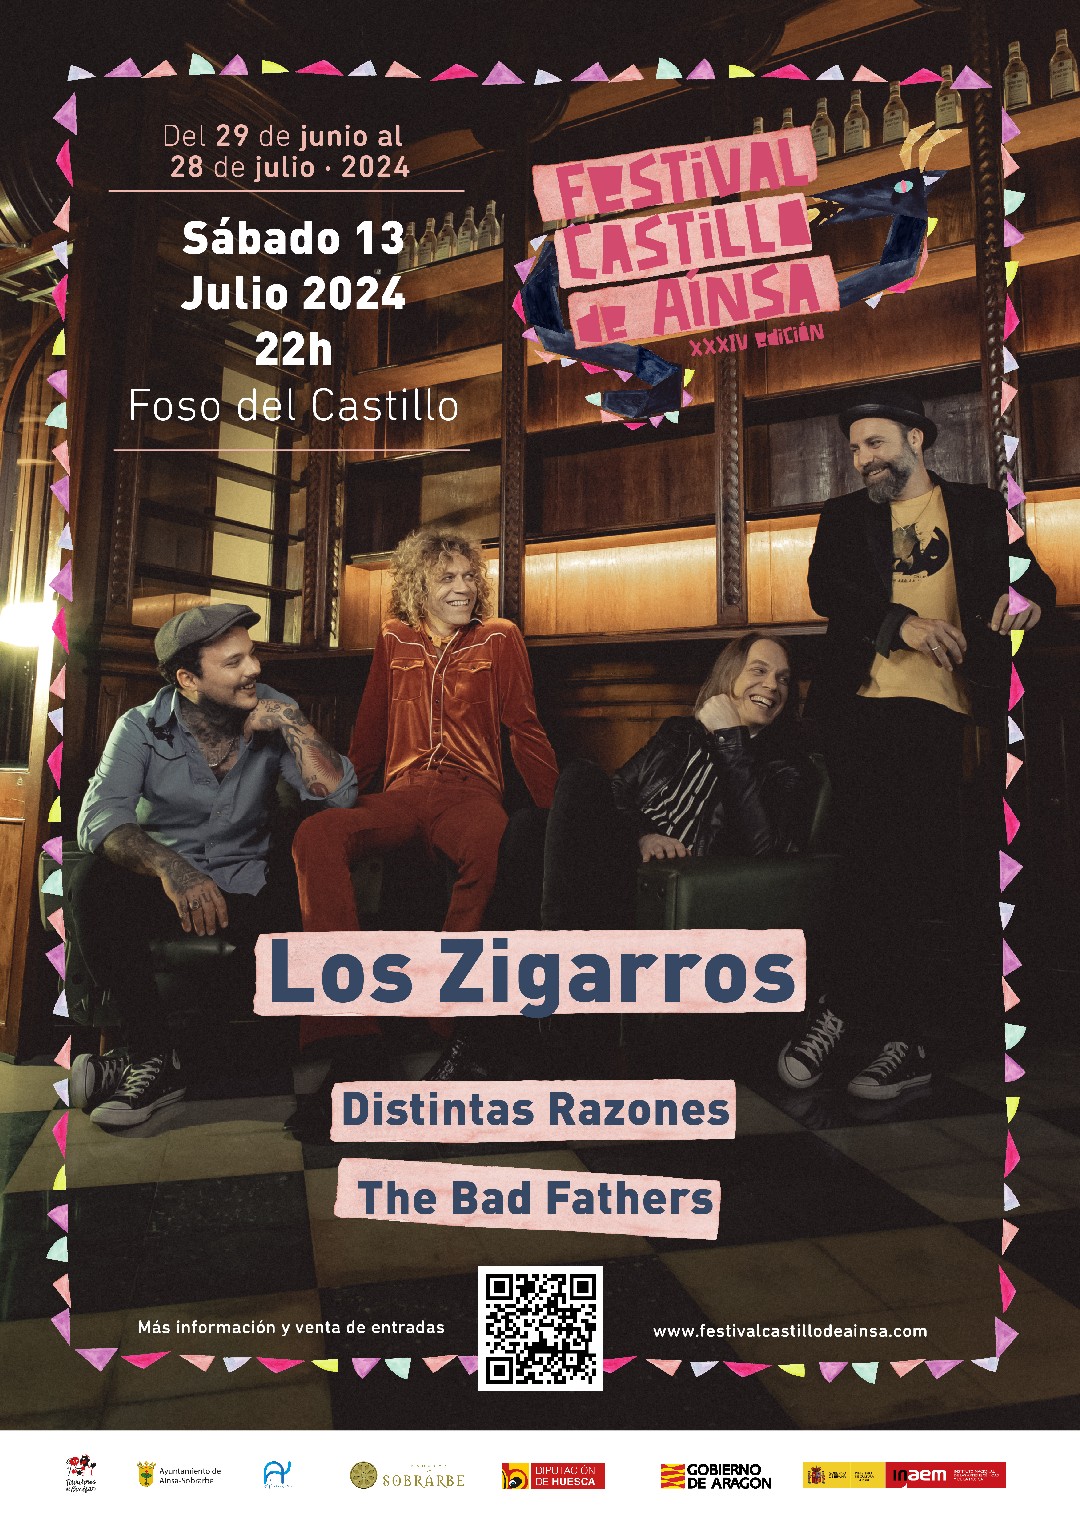 Festival Castillo de Ainsa: Concierto Los Zigarros + Distintas Razones + Bad Fathers